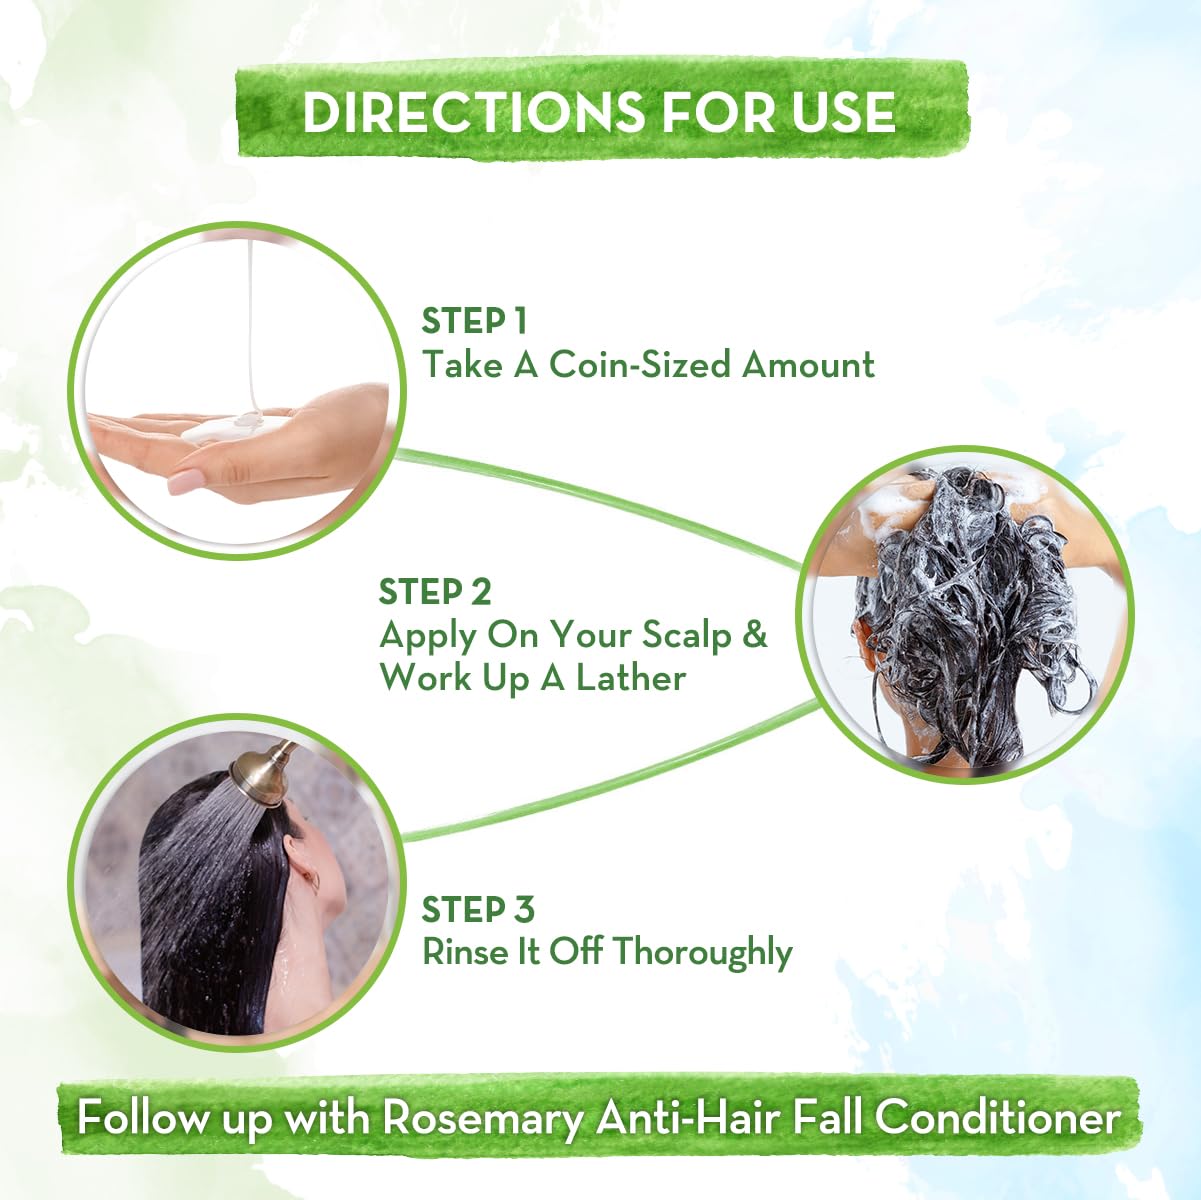 Mamaearth Rosemary Anti-Hair Fall Shampoo with Rosemary & Methi Dana - 250 ml